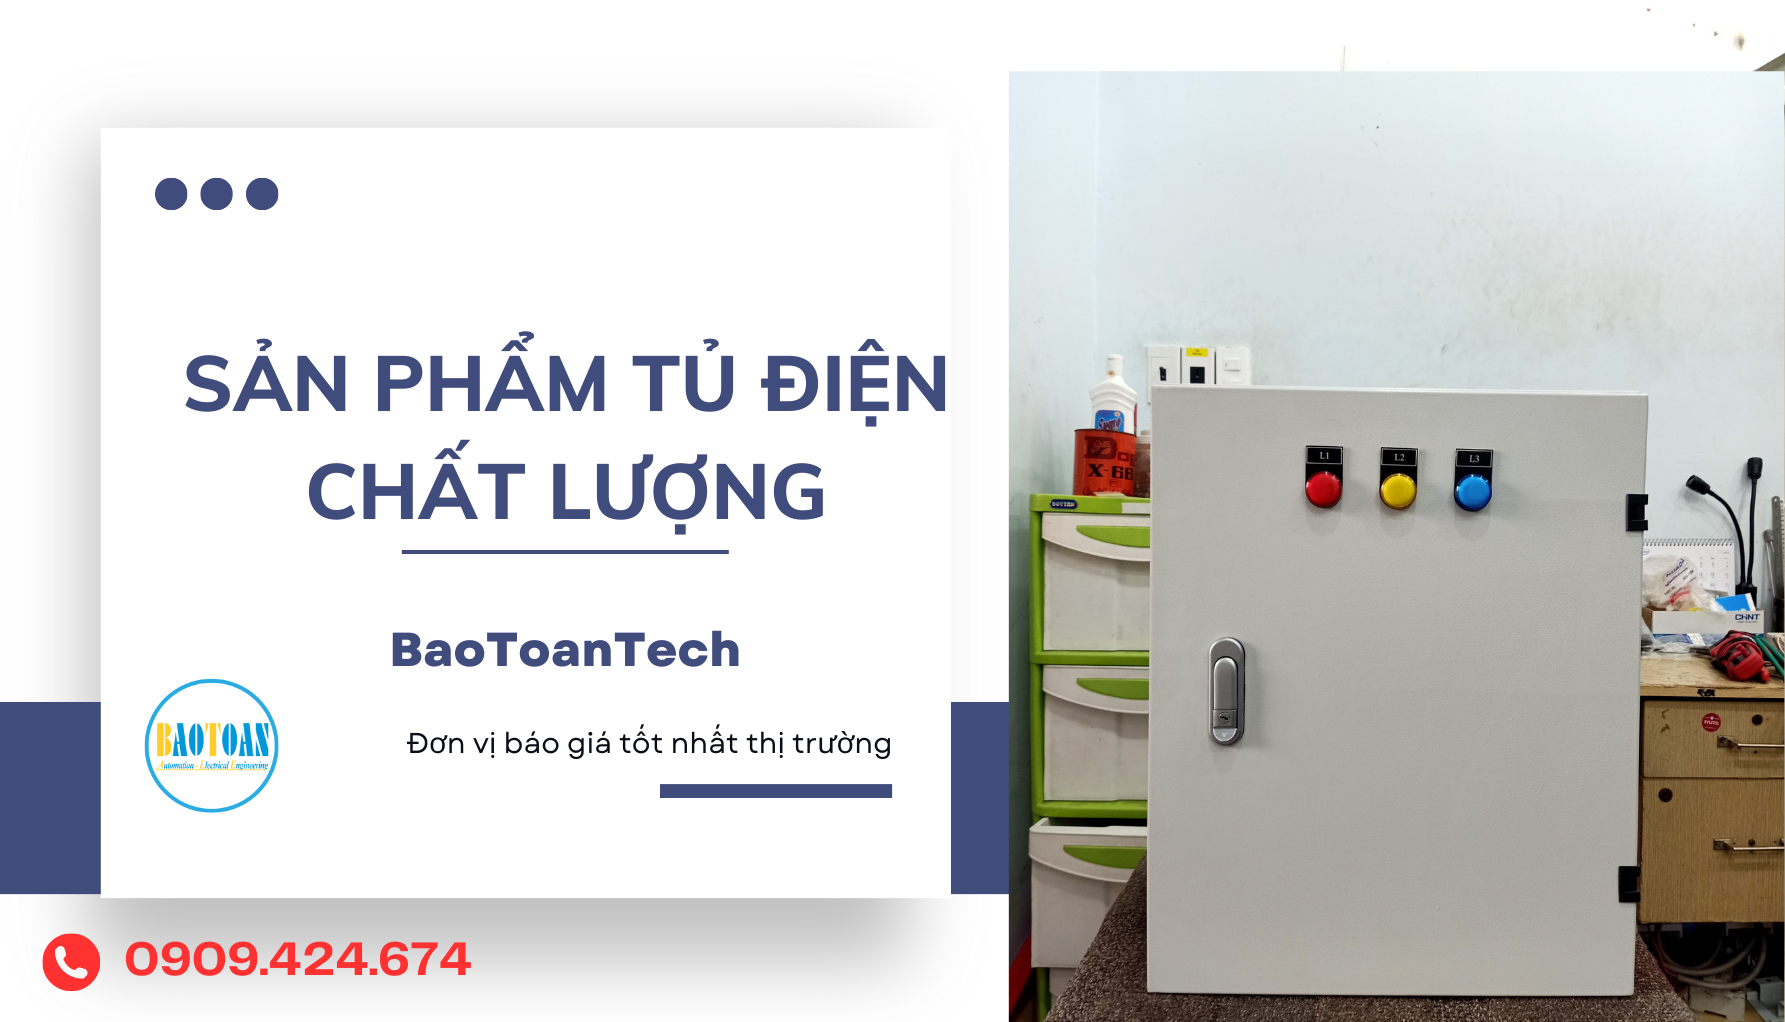 Tủ điện cấp nguồn cho căn hộ tại BaoToanTech